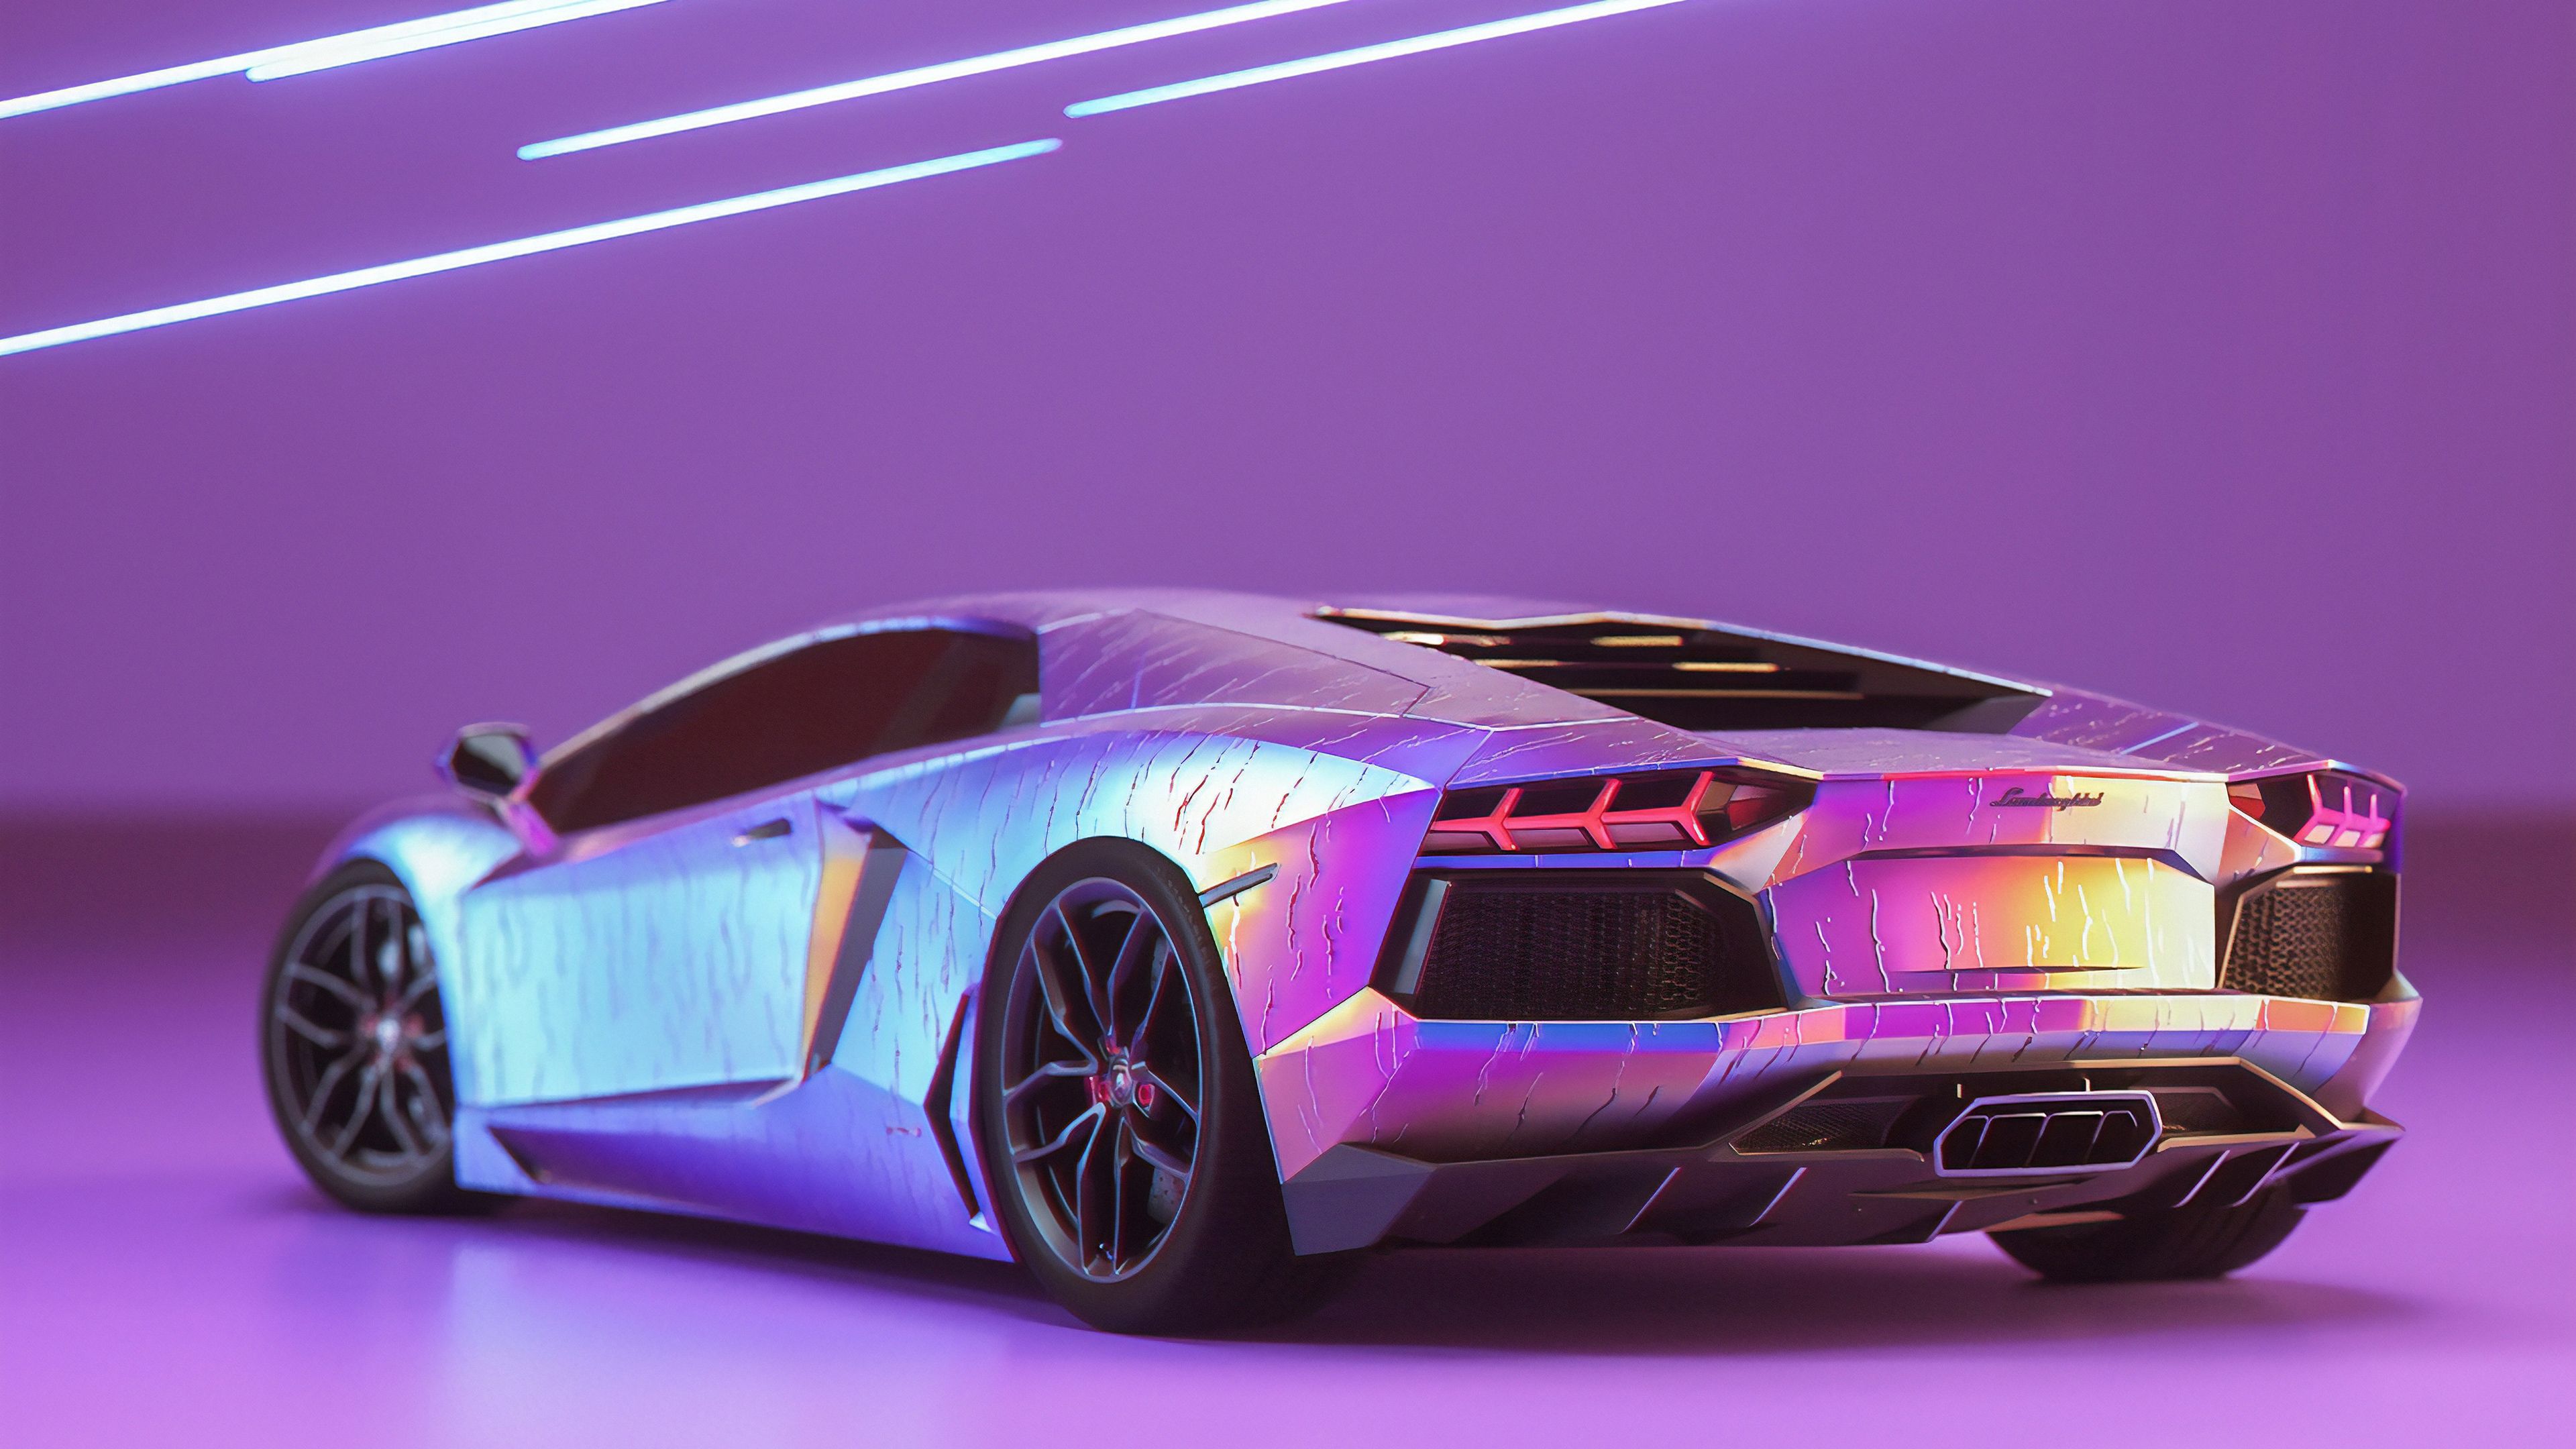 Lamborghini là một trong những thương hiệu siêu xe xa xỉ nhất trên thế giới. Hình nền Lamborghini mang đến cho bạn những hình ảnh đầy màu sắc và sự lịch lãm của siêu xe này. Hãy chiêm ngưỡng và cảm nhận sự đẳng cấp của Lamborghini thông qua những hình ảnh tuyệt đẹp này.